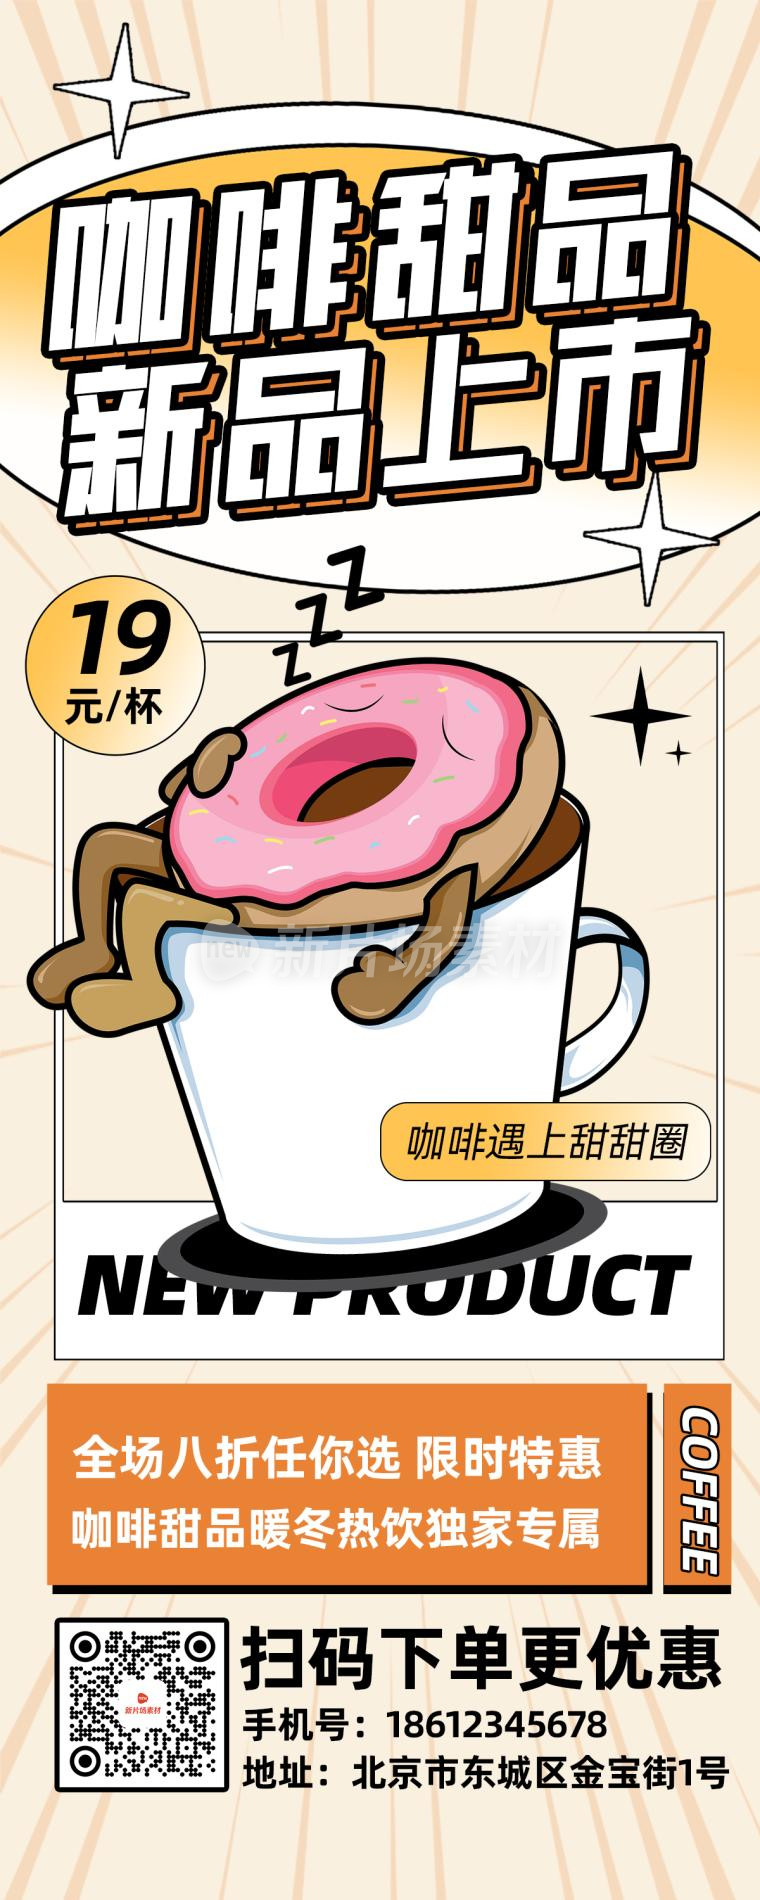 咖啡甜品上市营销创意时尚长图海报